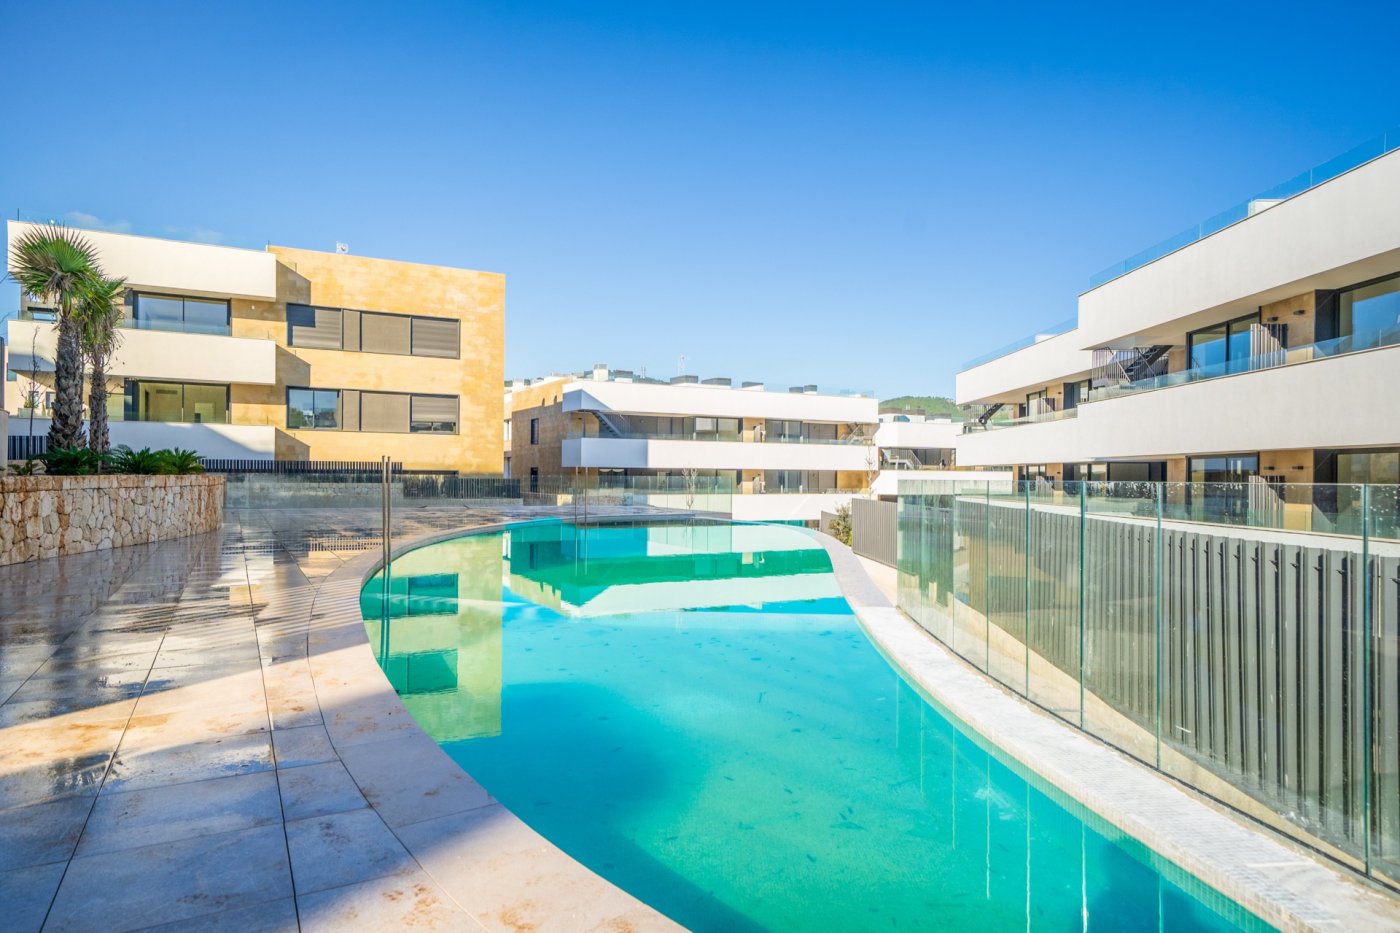 Ausgezeichnete Wohnung mit großer Terrasse in einer gepflegten Anlage neben dem Golfplatz in Palma.